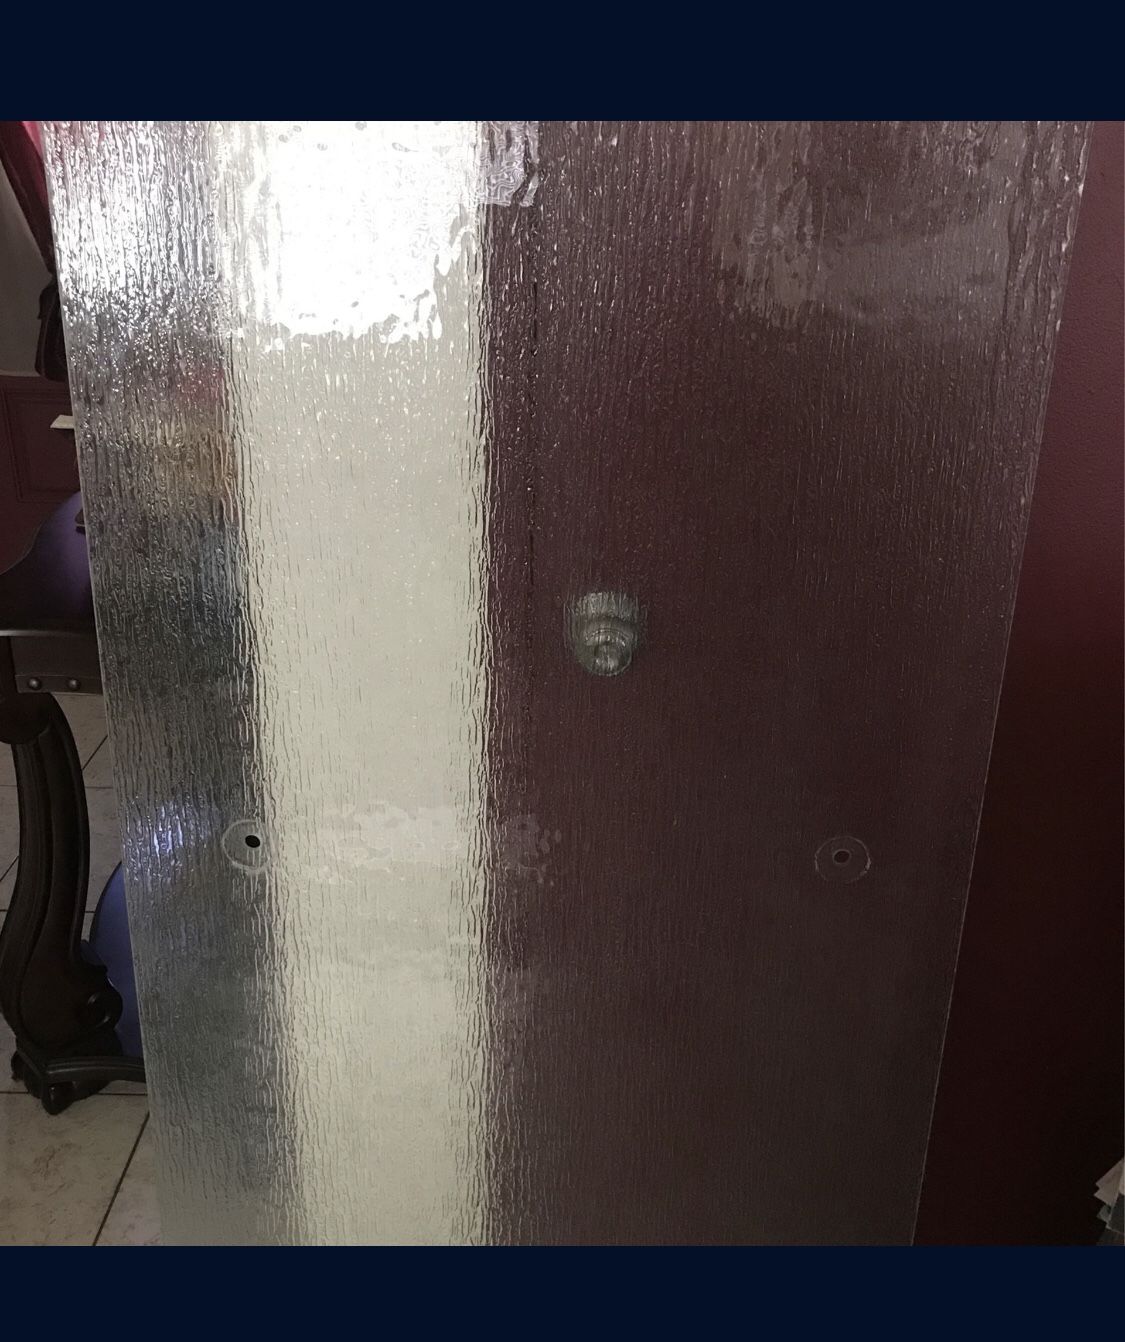 Glass Shower Door